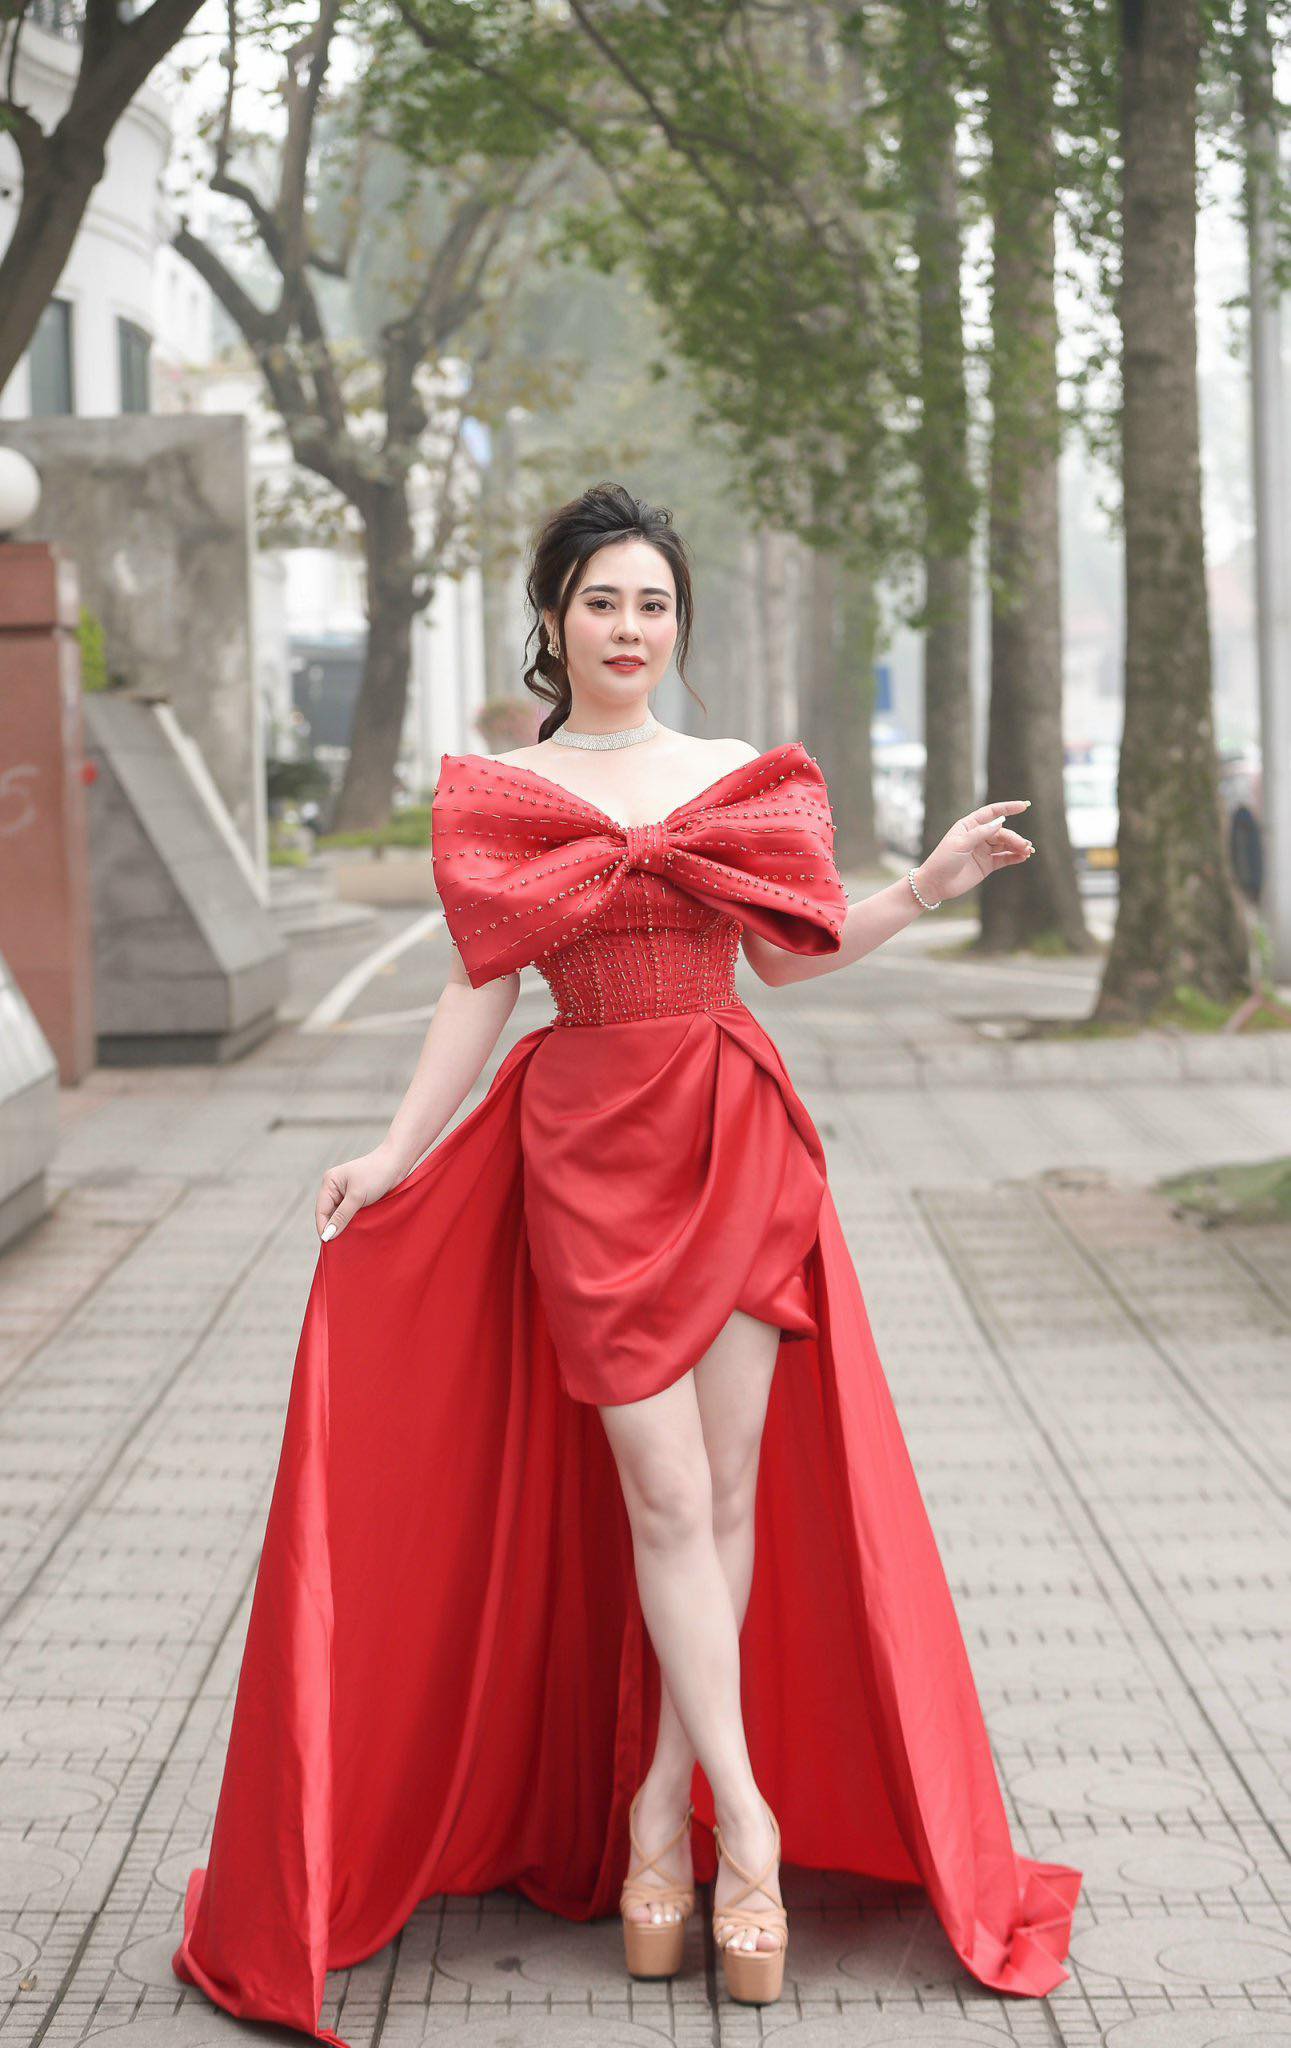 Hoa hậu Phan Kim Oanh mong muốn quảng bá nhan sắc và trí tuệ của người đẹp Việt Nam đến với quốc tế. Ảnh: Nhân vật cung cấp